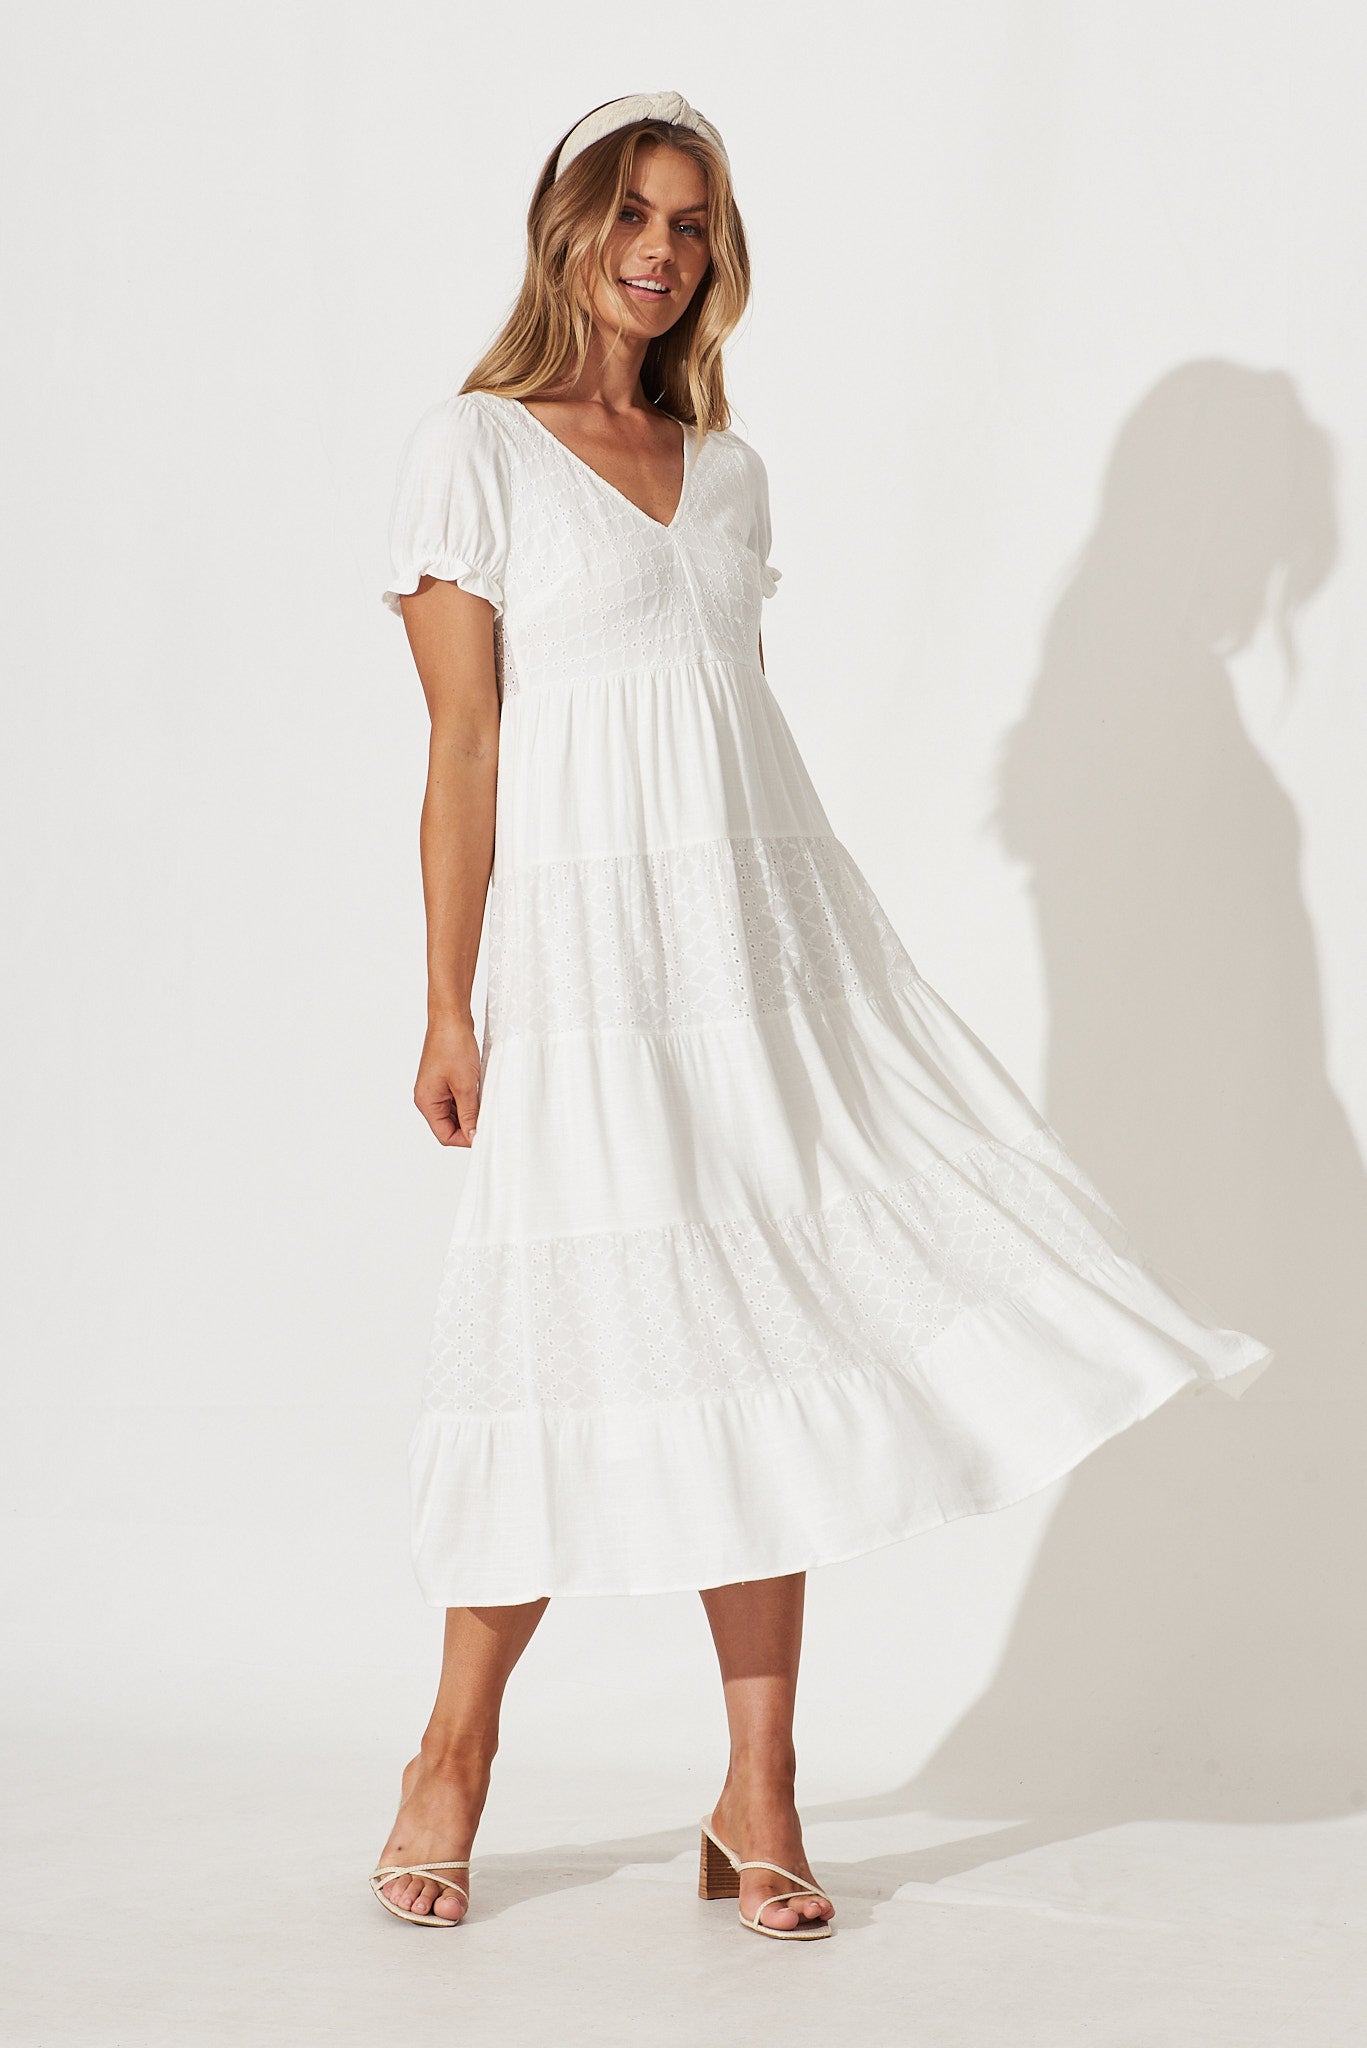 Baby Love Midi Dress In White Cotton Linen Broderie - full length